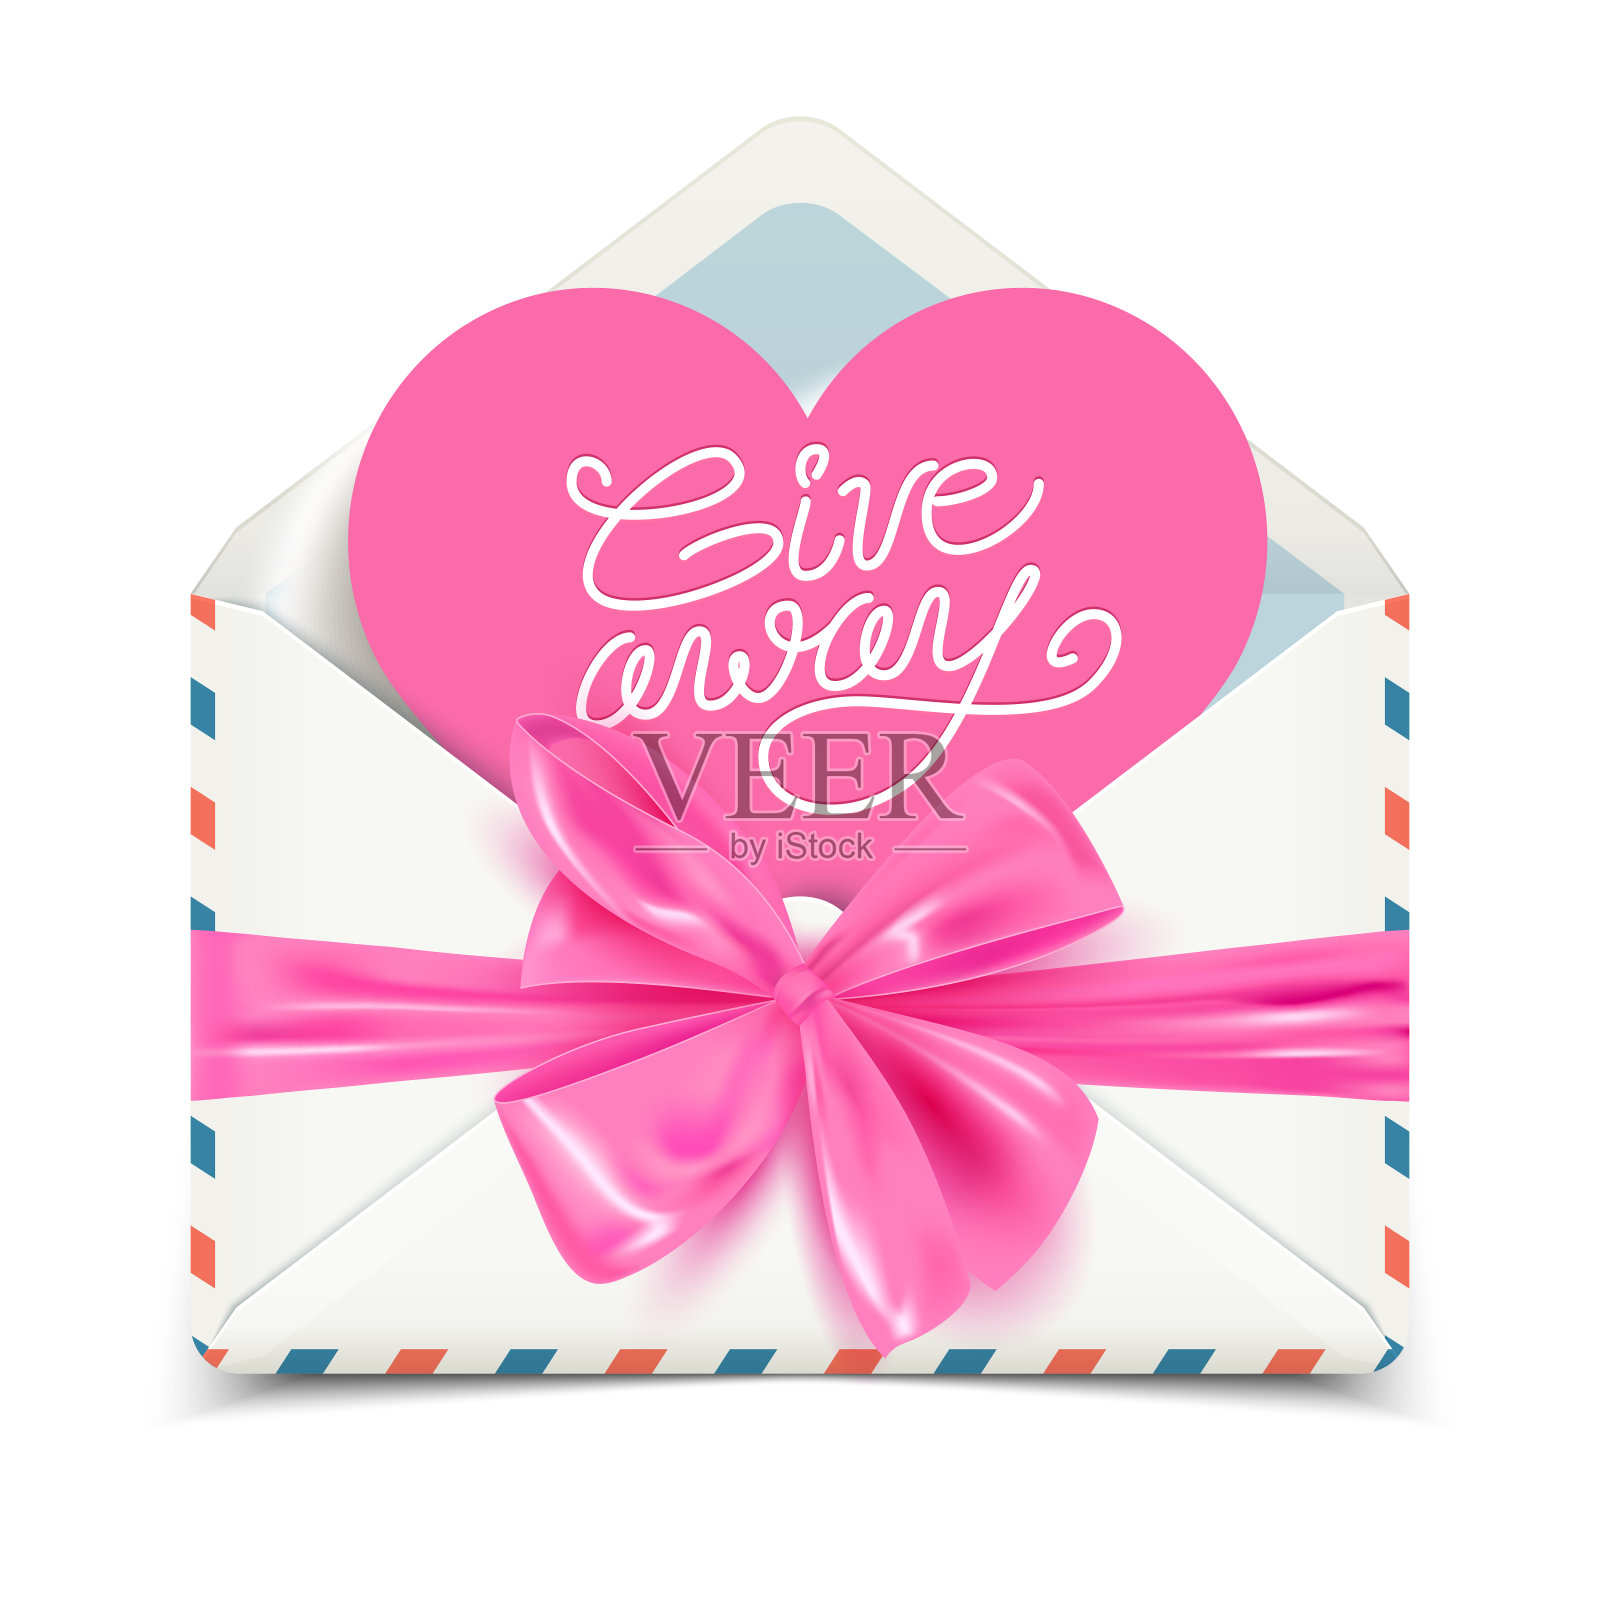 赠品广告横幅设计，现实的白色信封与粉色蝴蝶结，矢量插图设计模板素材